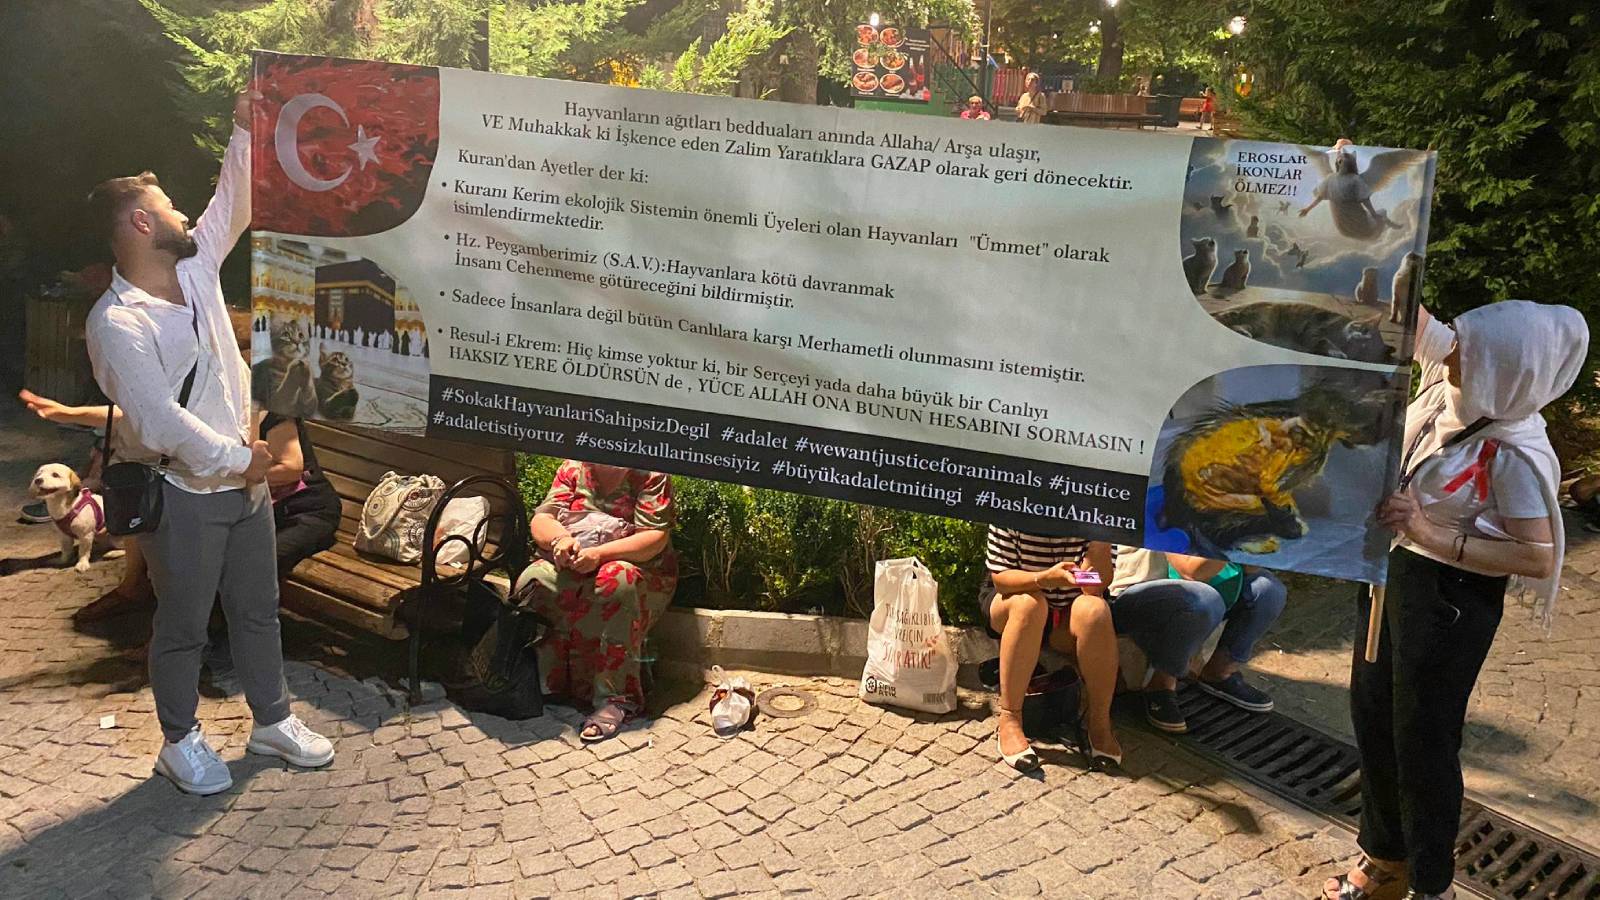 Kuğulu Park’ta sokak hayvanları protestosu: Eyleme bireysel olarak katılan vatandaşlar, dövizlerinde Kuran’dan ayetlere yer verdi